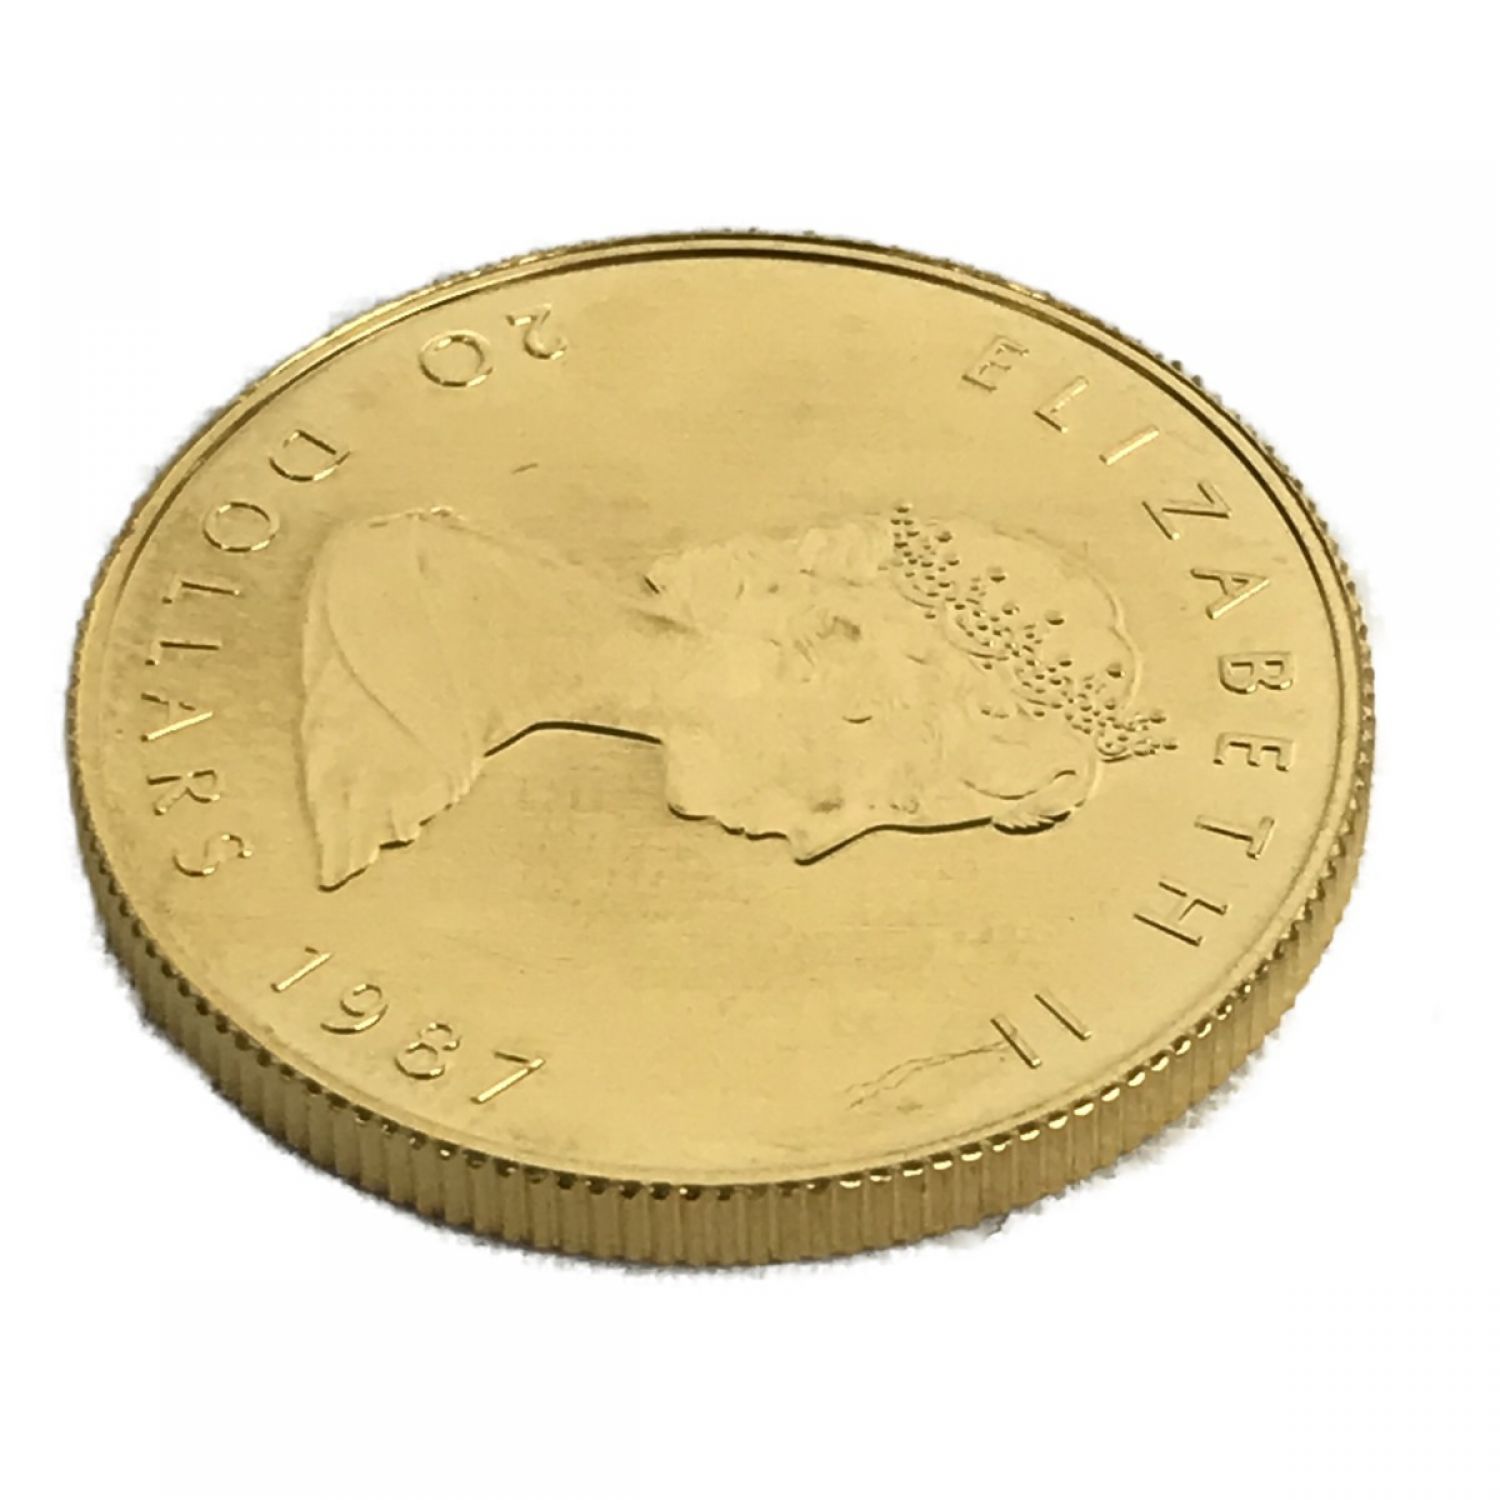 値下げ】1987 カナダ100ドル金貨 - www.stedile.com.br